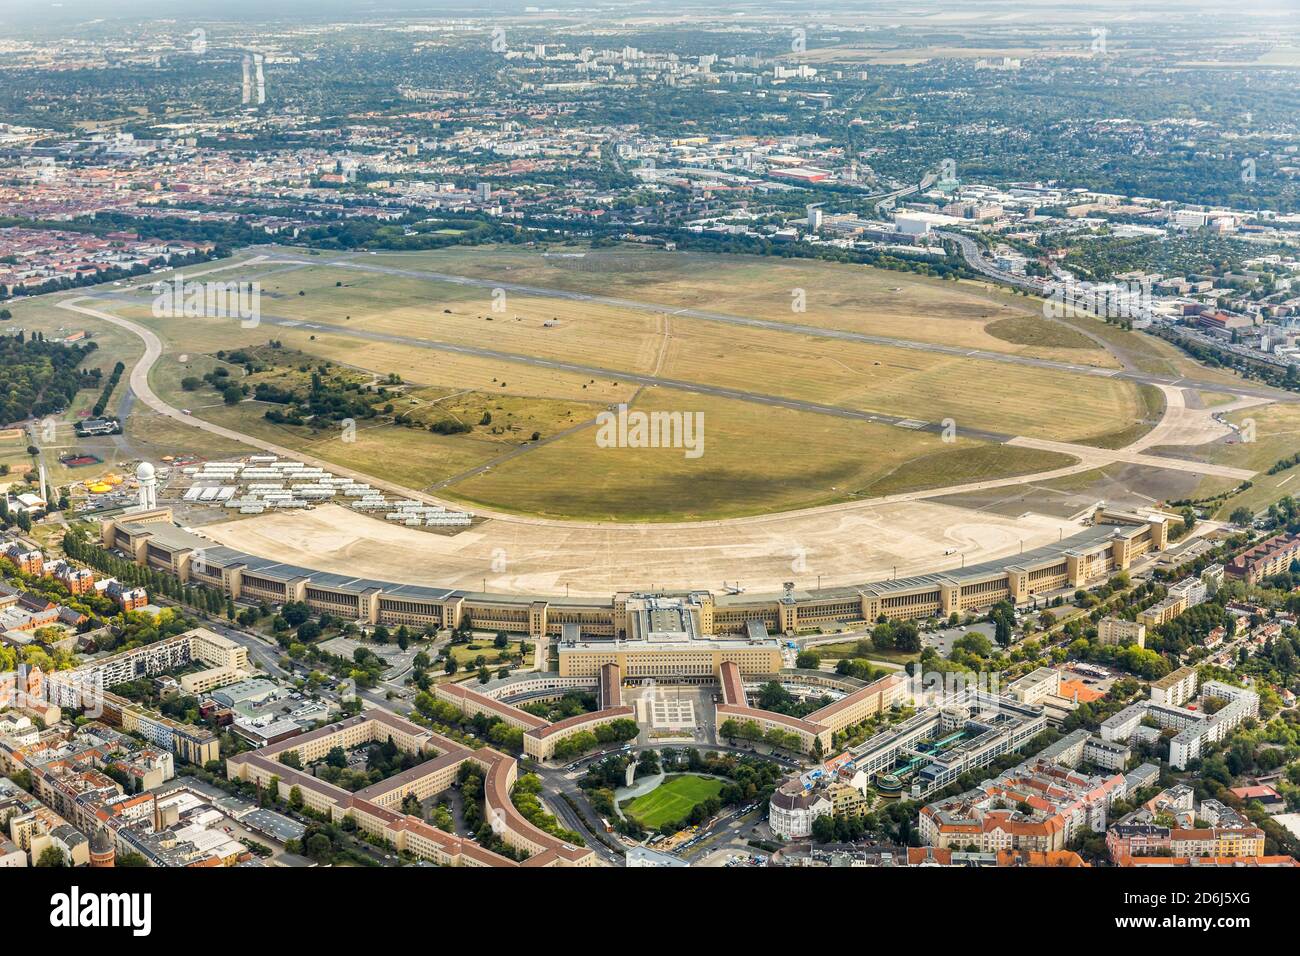 Berlin Tempelhof Airport terminal, Berlin, Germany Stock Photo